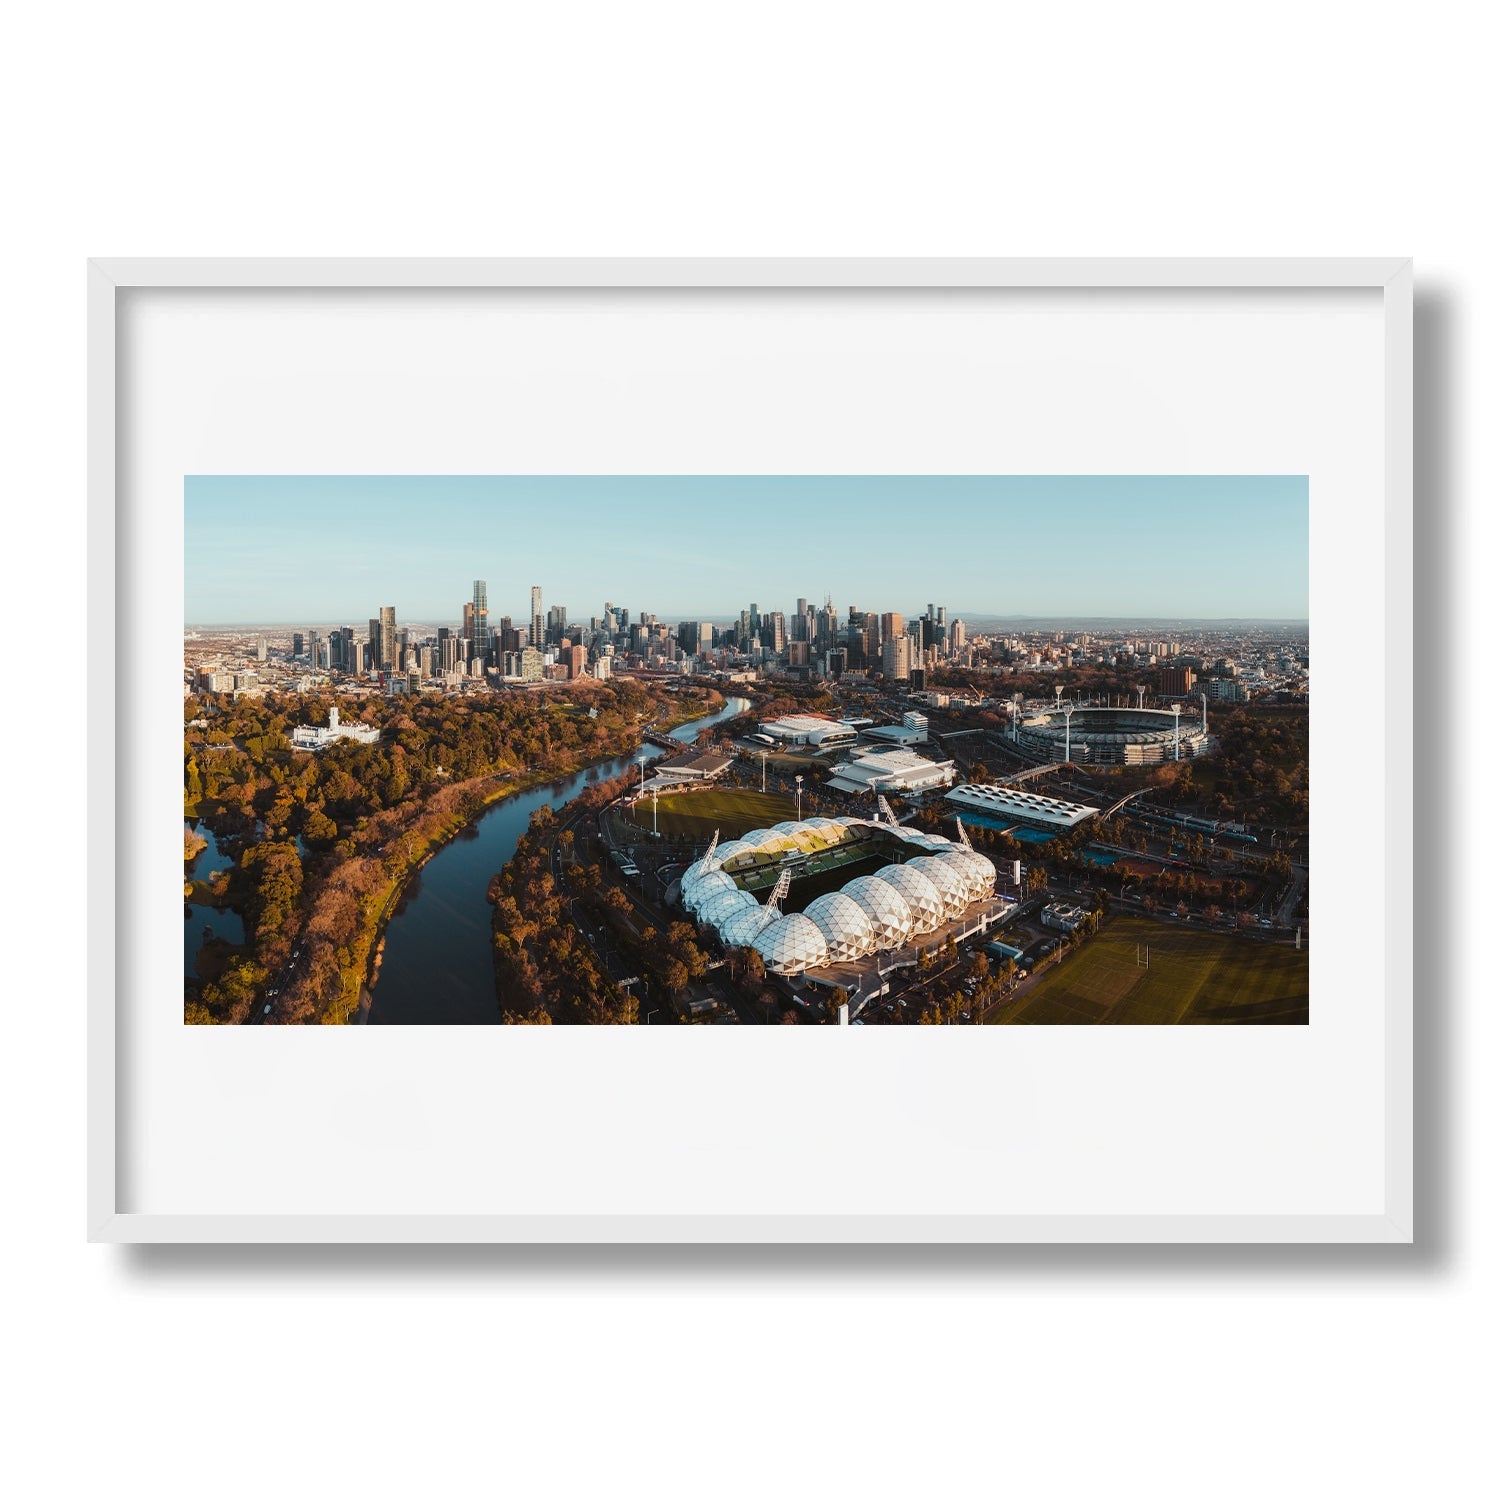 Melbourne Panorama - Yarra River, MCG - Peter Yan Studio